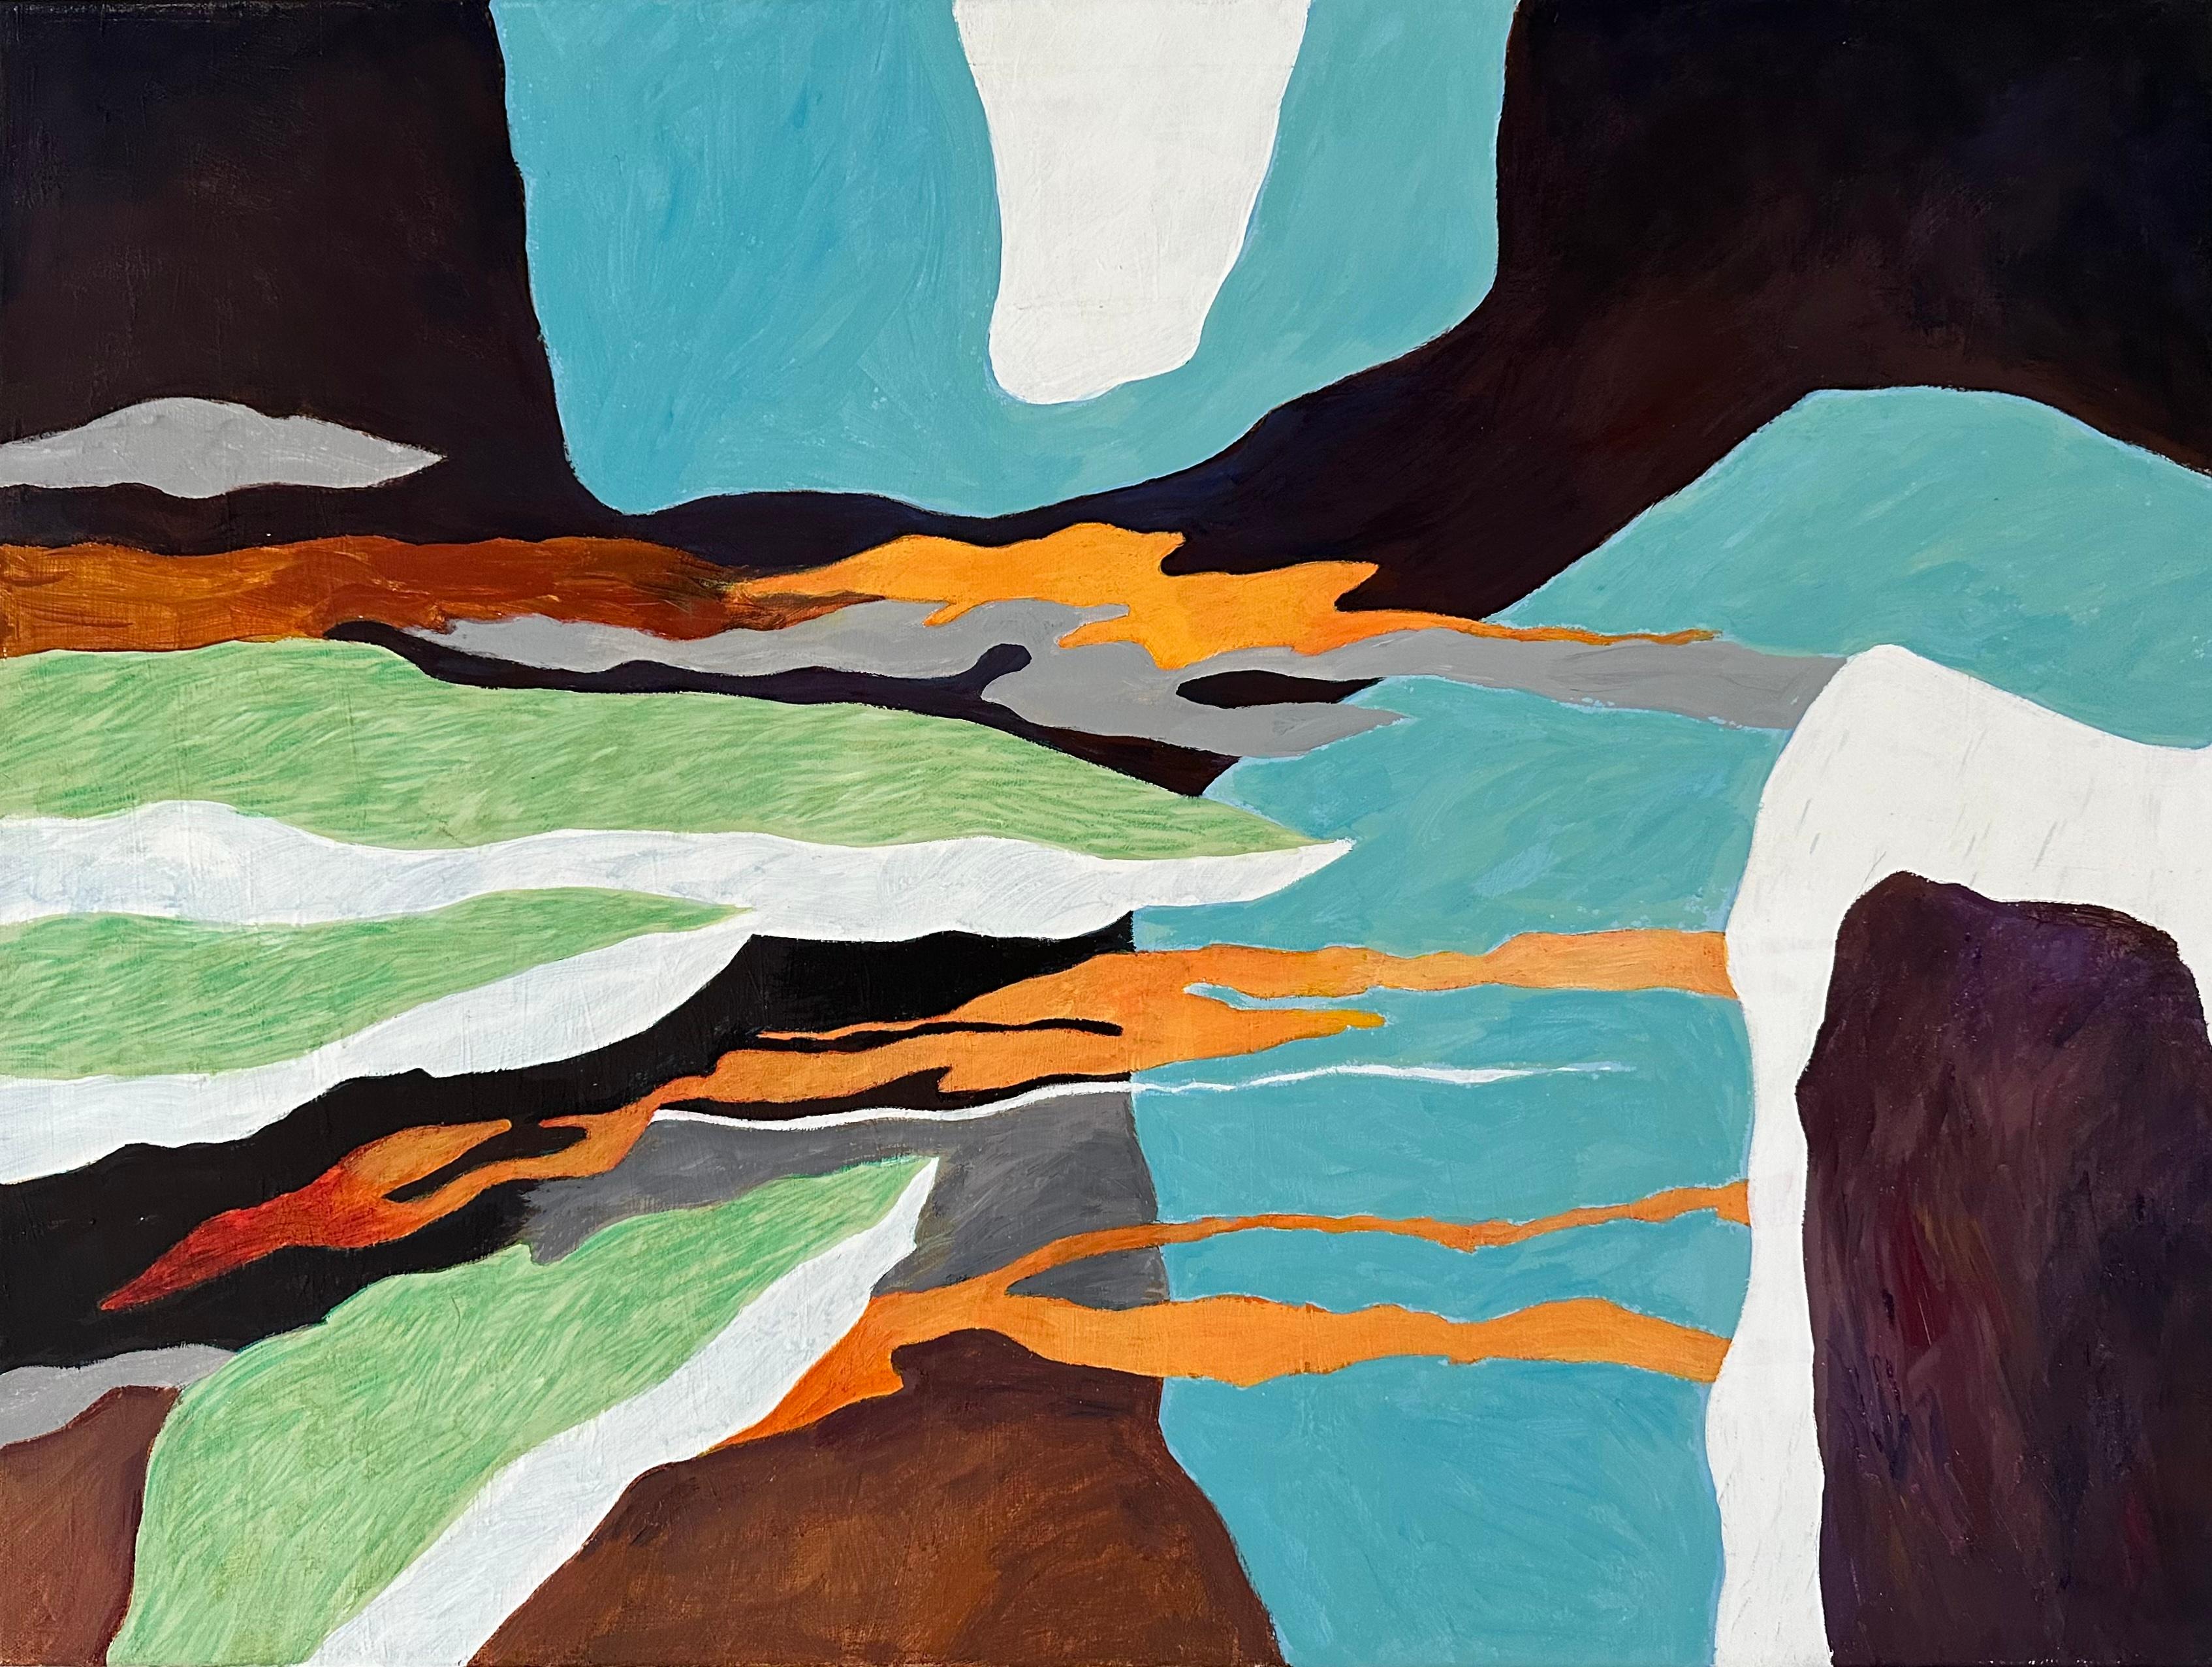 Voici "Stairways To Heaven", une peinture pleine de personnalité de l'artiste danois contemporain Steffen Bue.

Avec une palette de couleurs dynamiques comprenant de l'orange vif, du bleu, du blanc, du noir et du vert, cette pièce dégage une